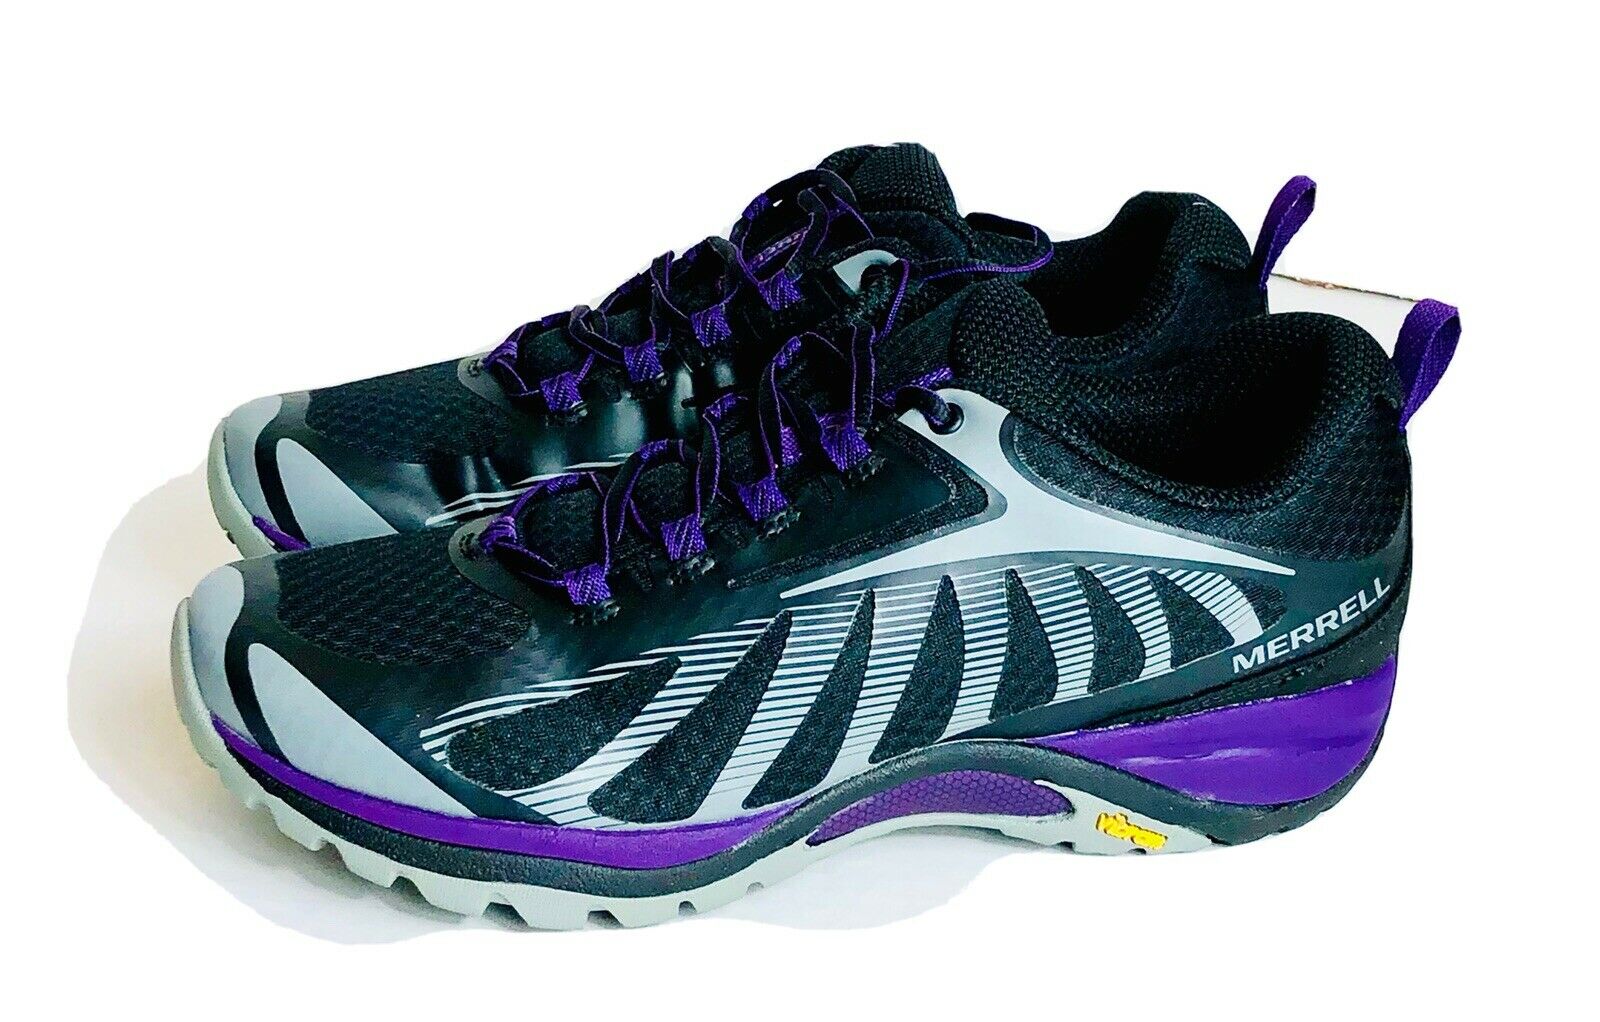 Merrell Womens Siren Edge 3 Purple/black Waterproof Running Hiking Shoes Size 10